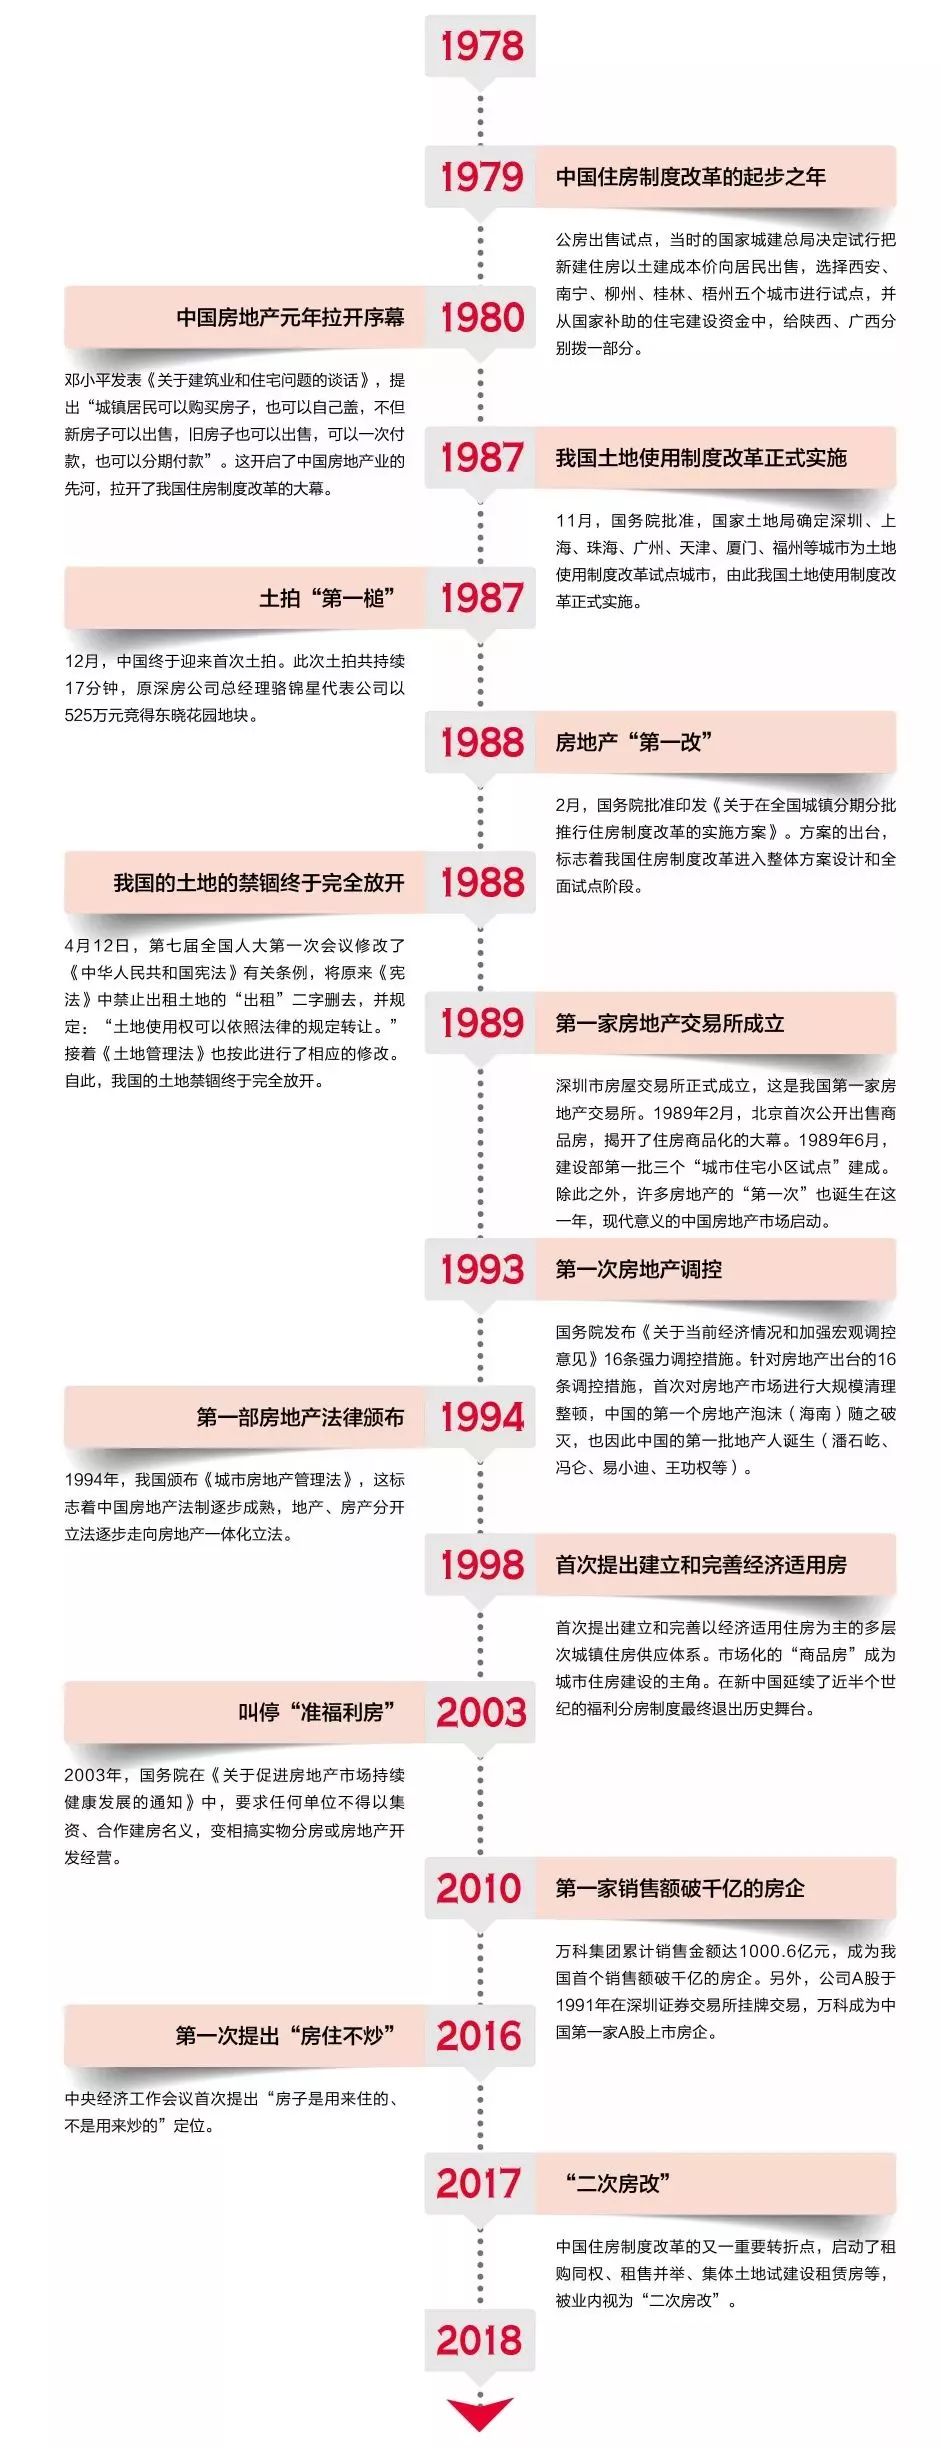 40年的历史碎片,串起中国房地产业成长史!